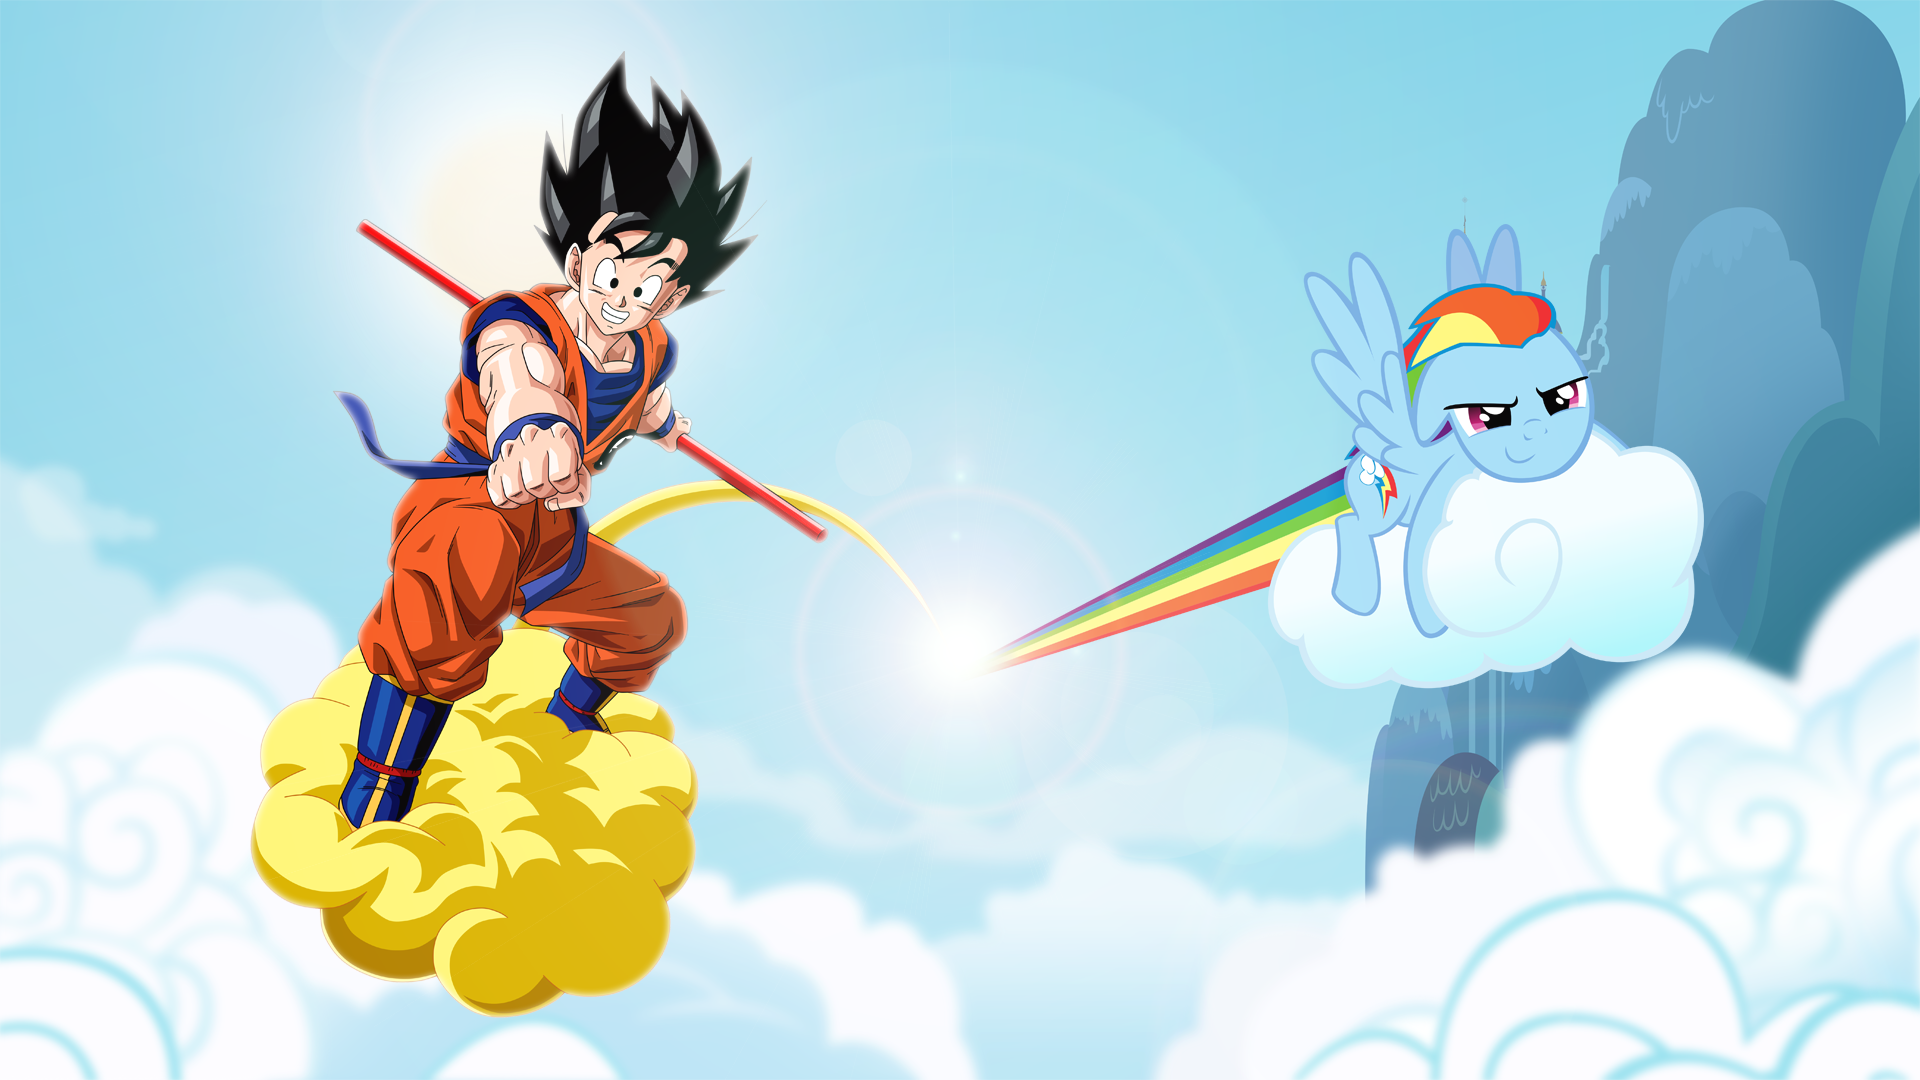 ArtStation  Naruto Luffy  Goku shonen jump Heroes Borja Villén Bonet  Naruto Dragonball HD wallpaper  Pxfuel